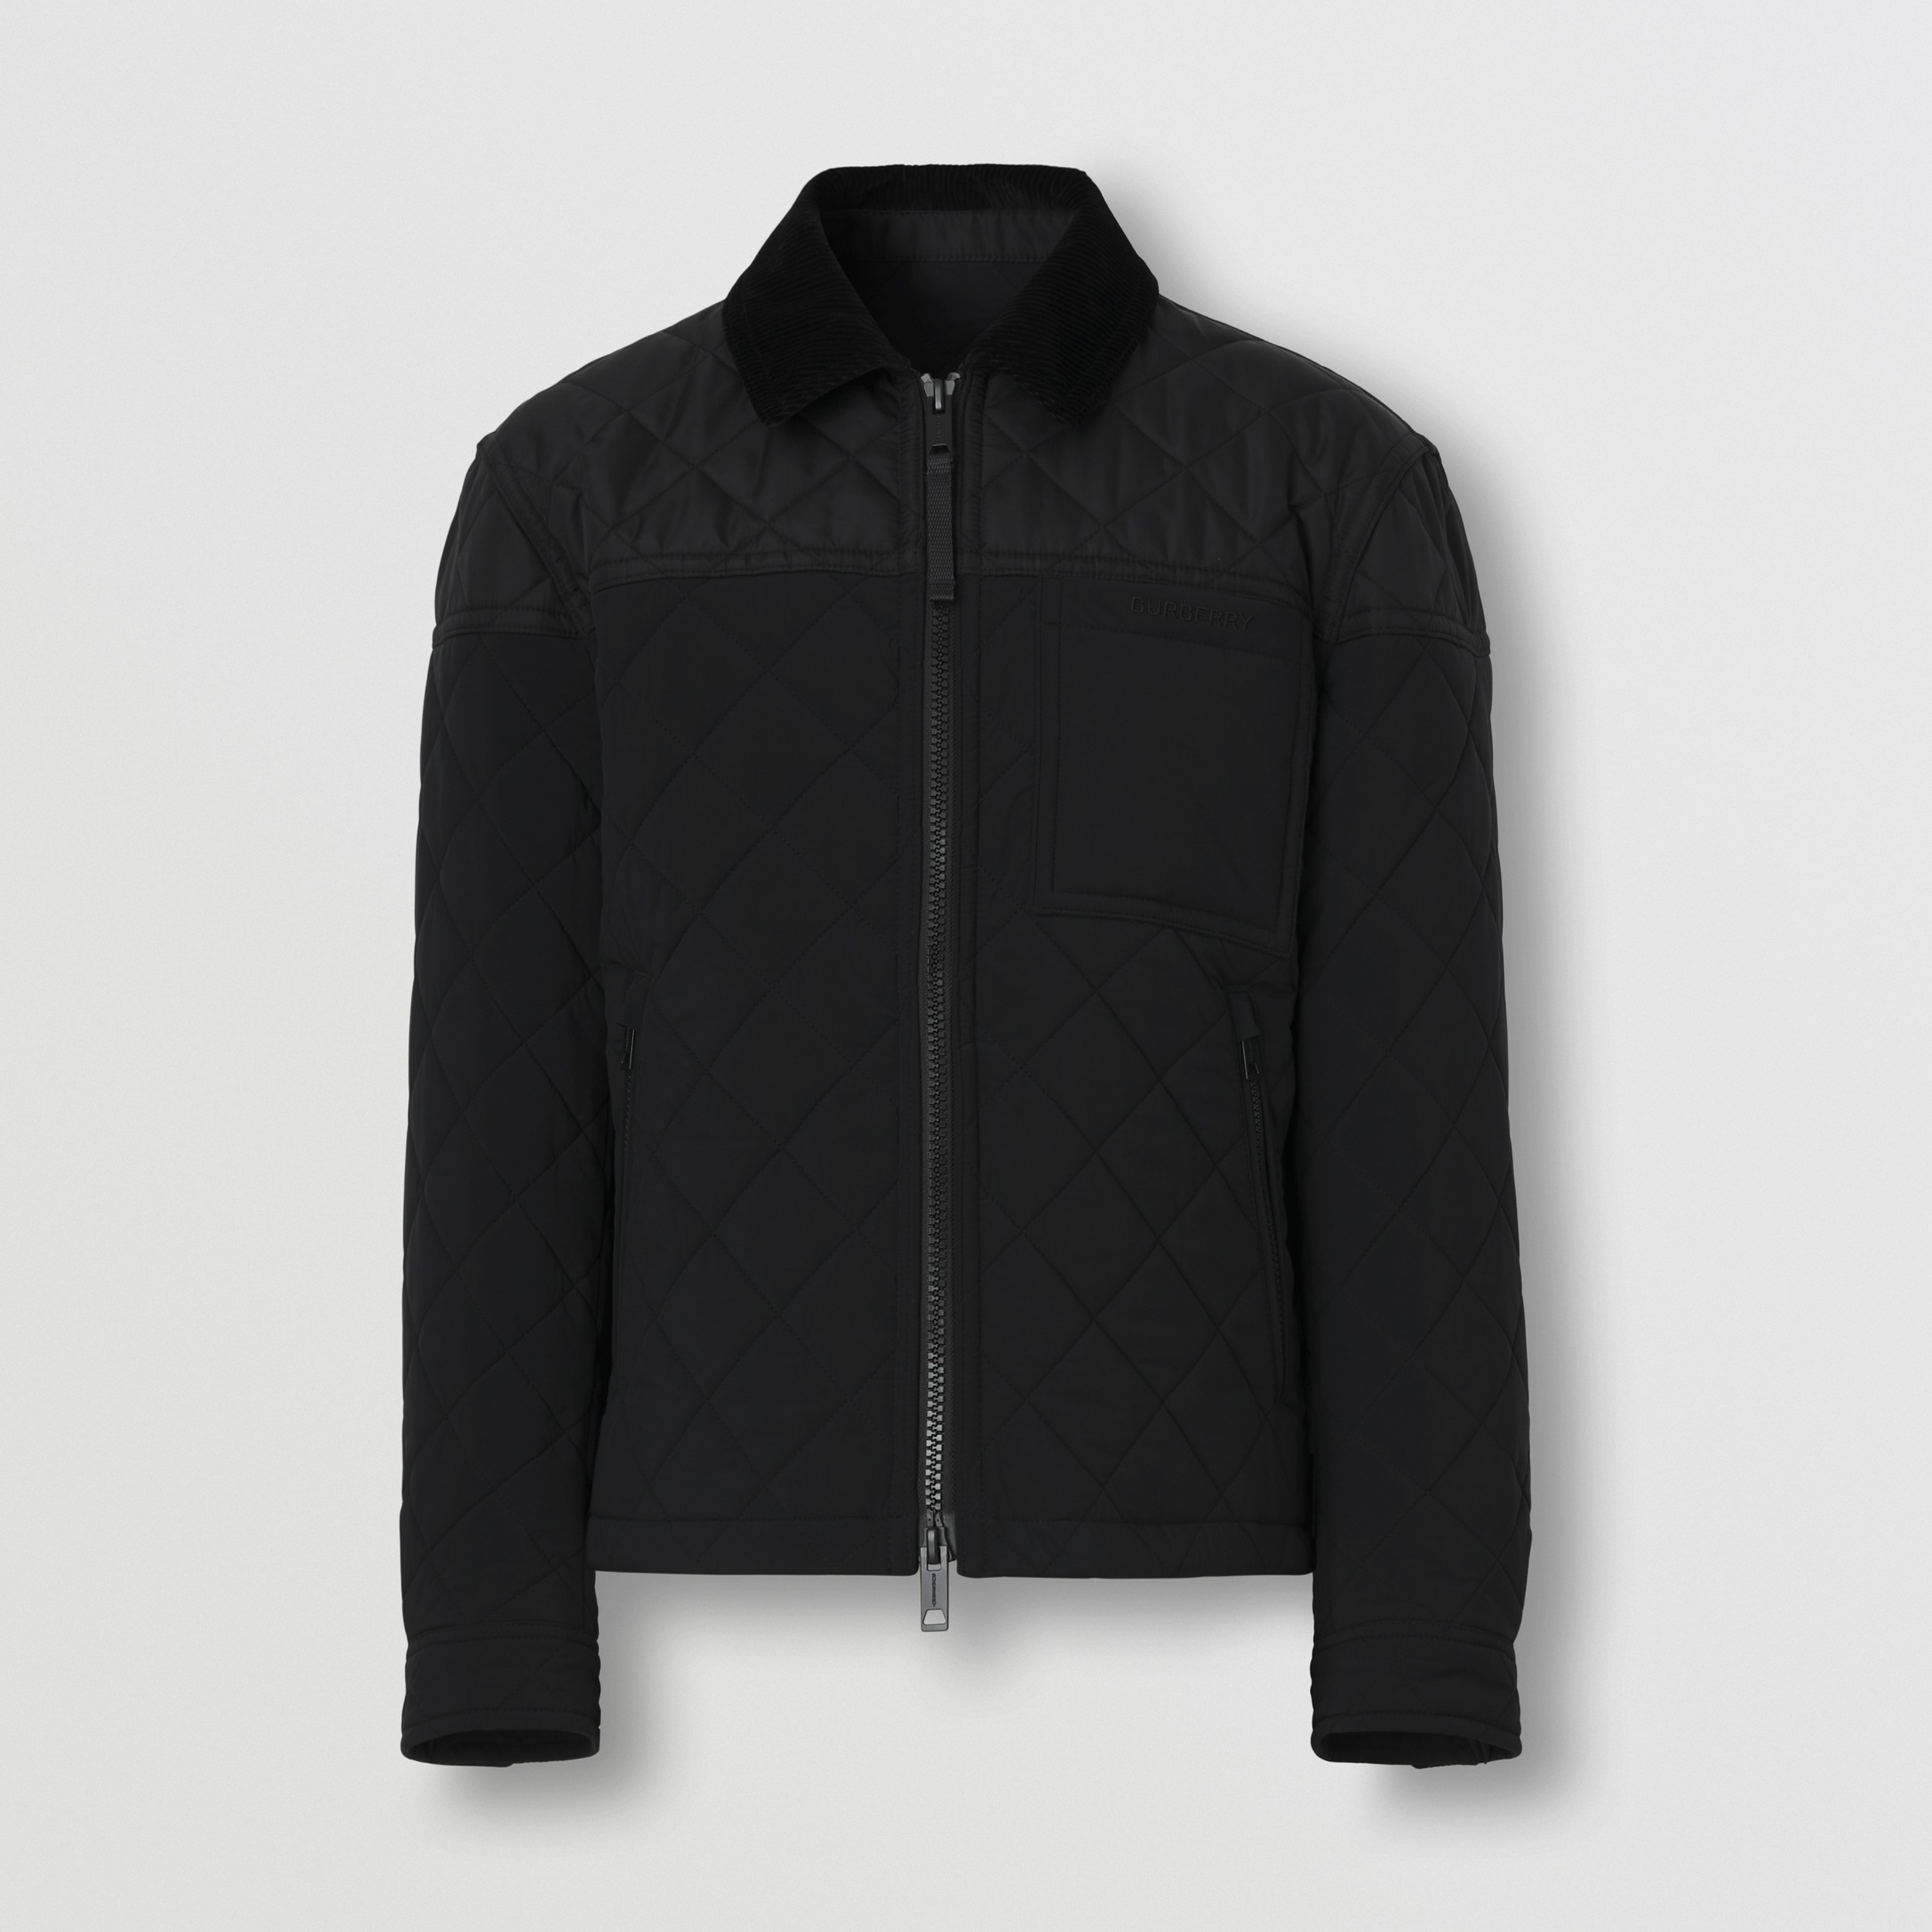 Стеганая куртка Harrington из нейлона (Черный) - Для мужчин | Официальный сайт Burberry® - 4